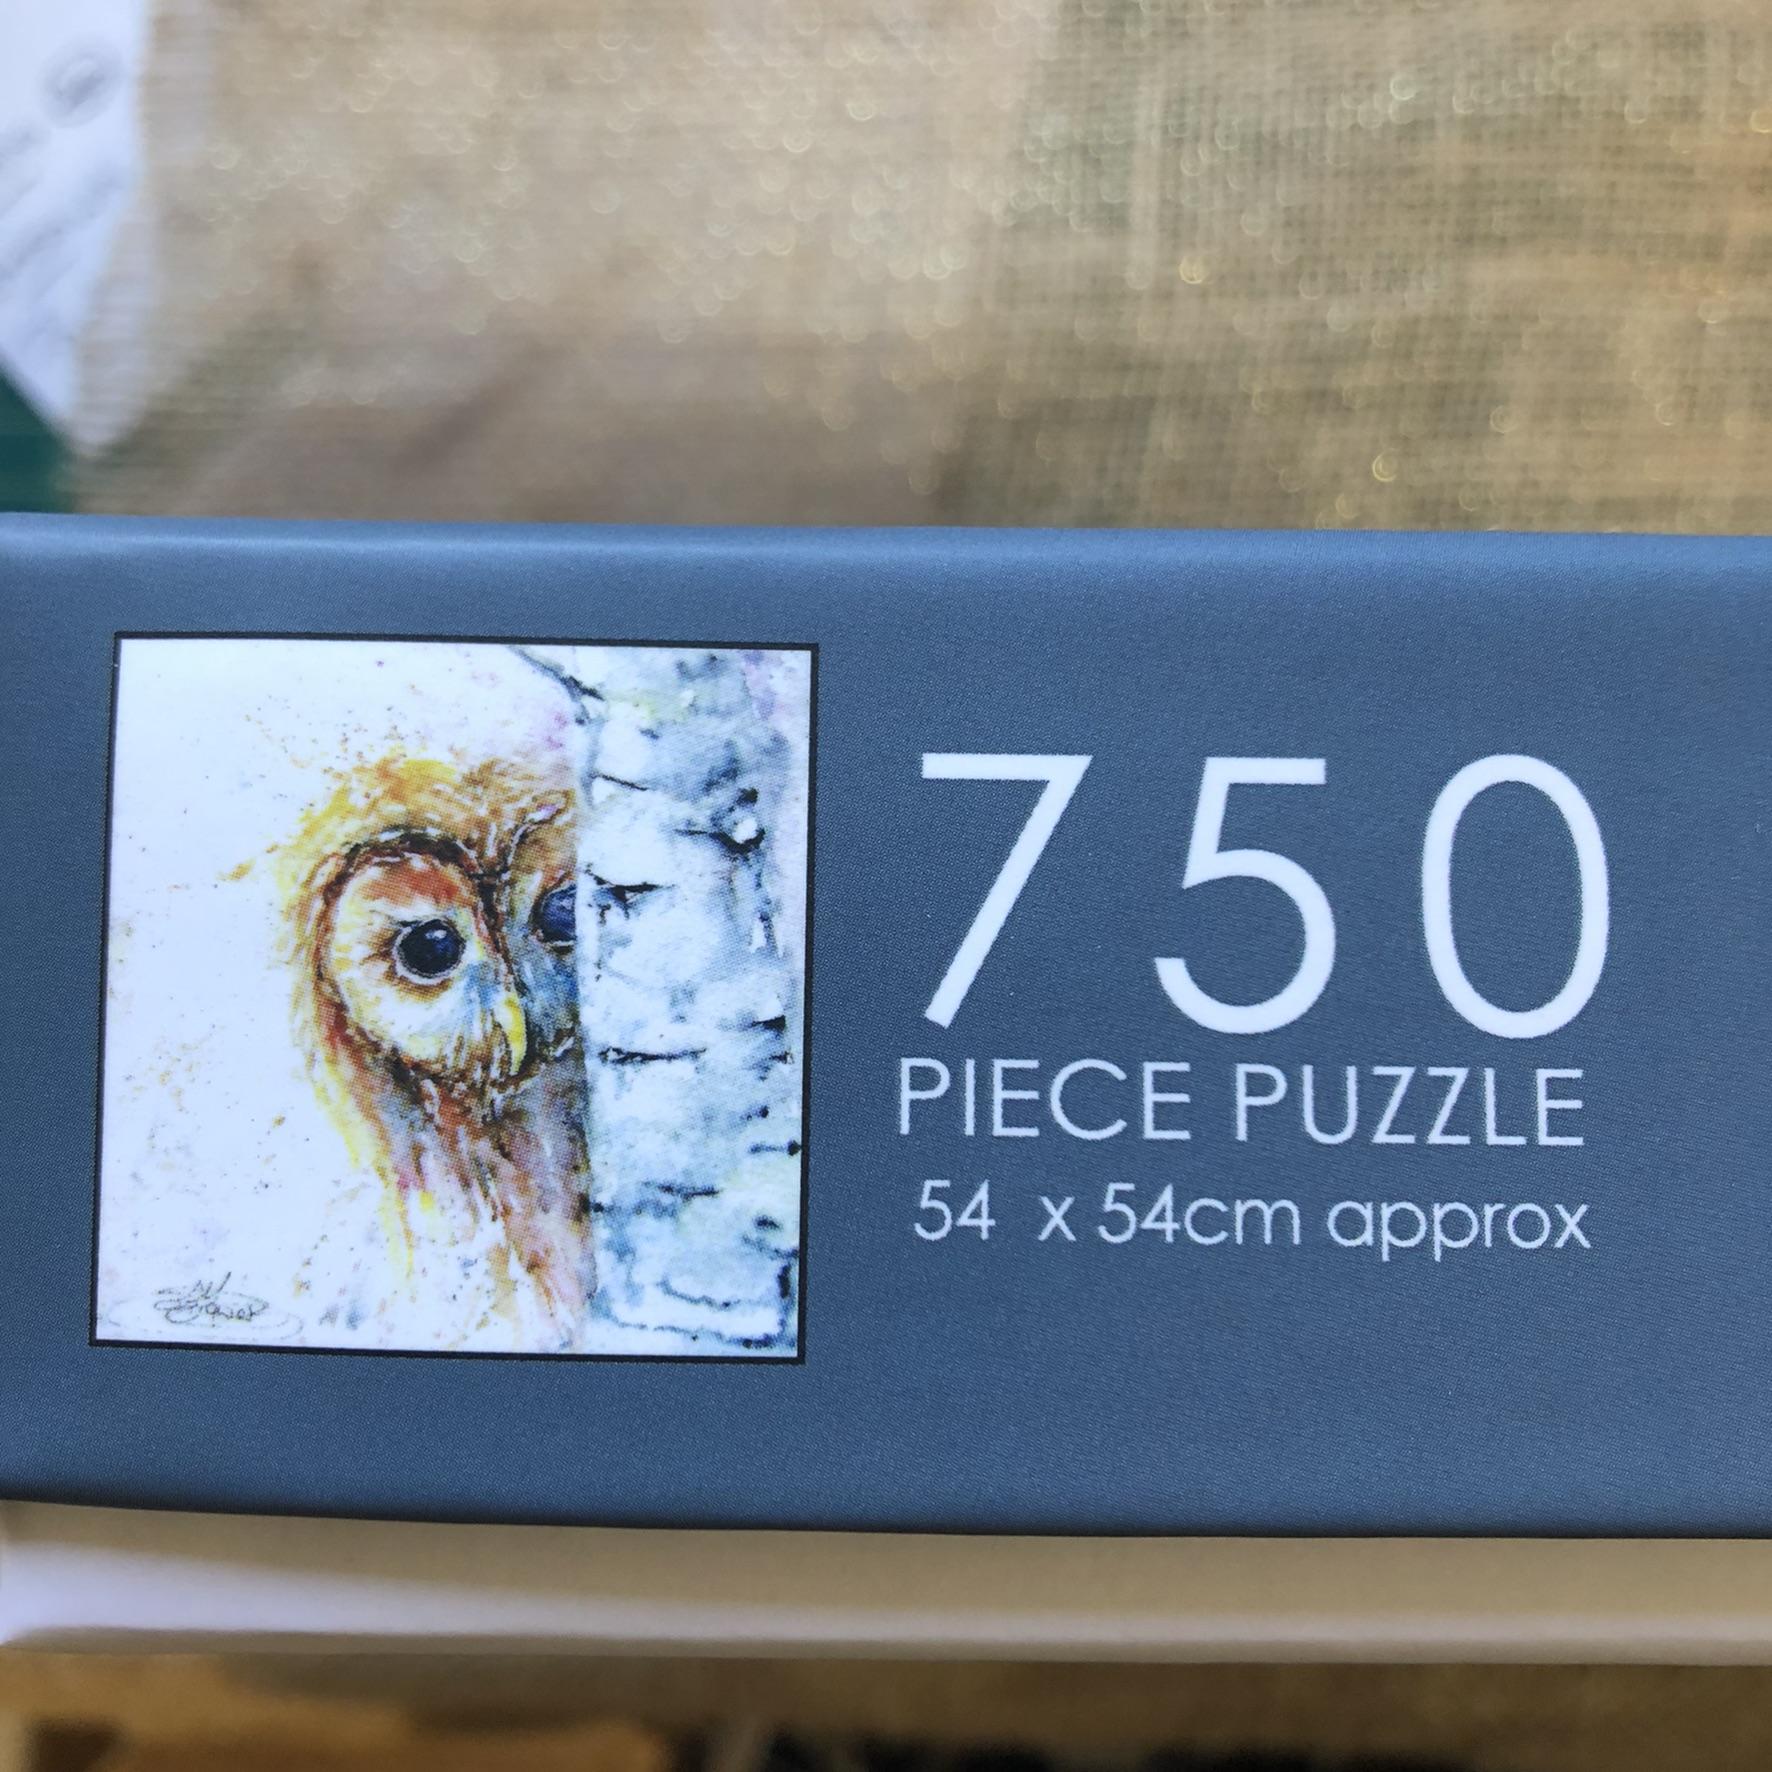 750 pieces